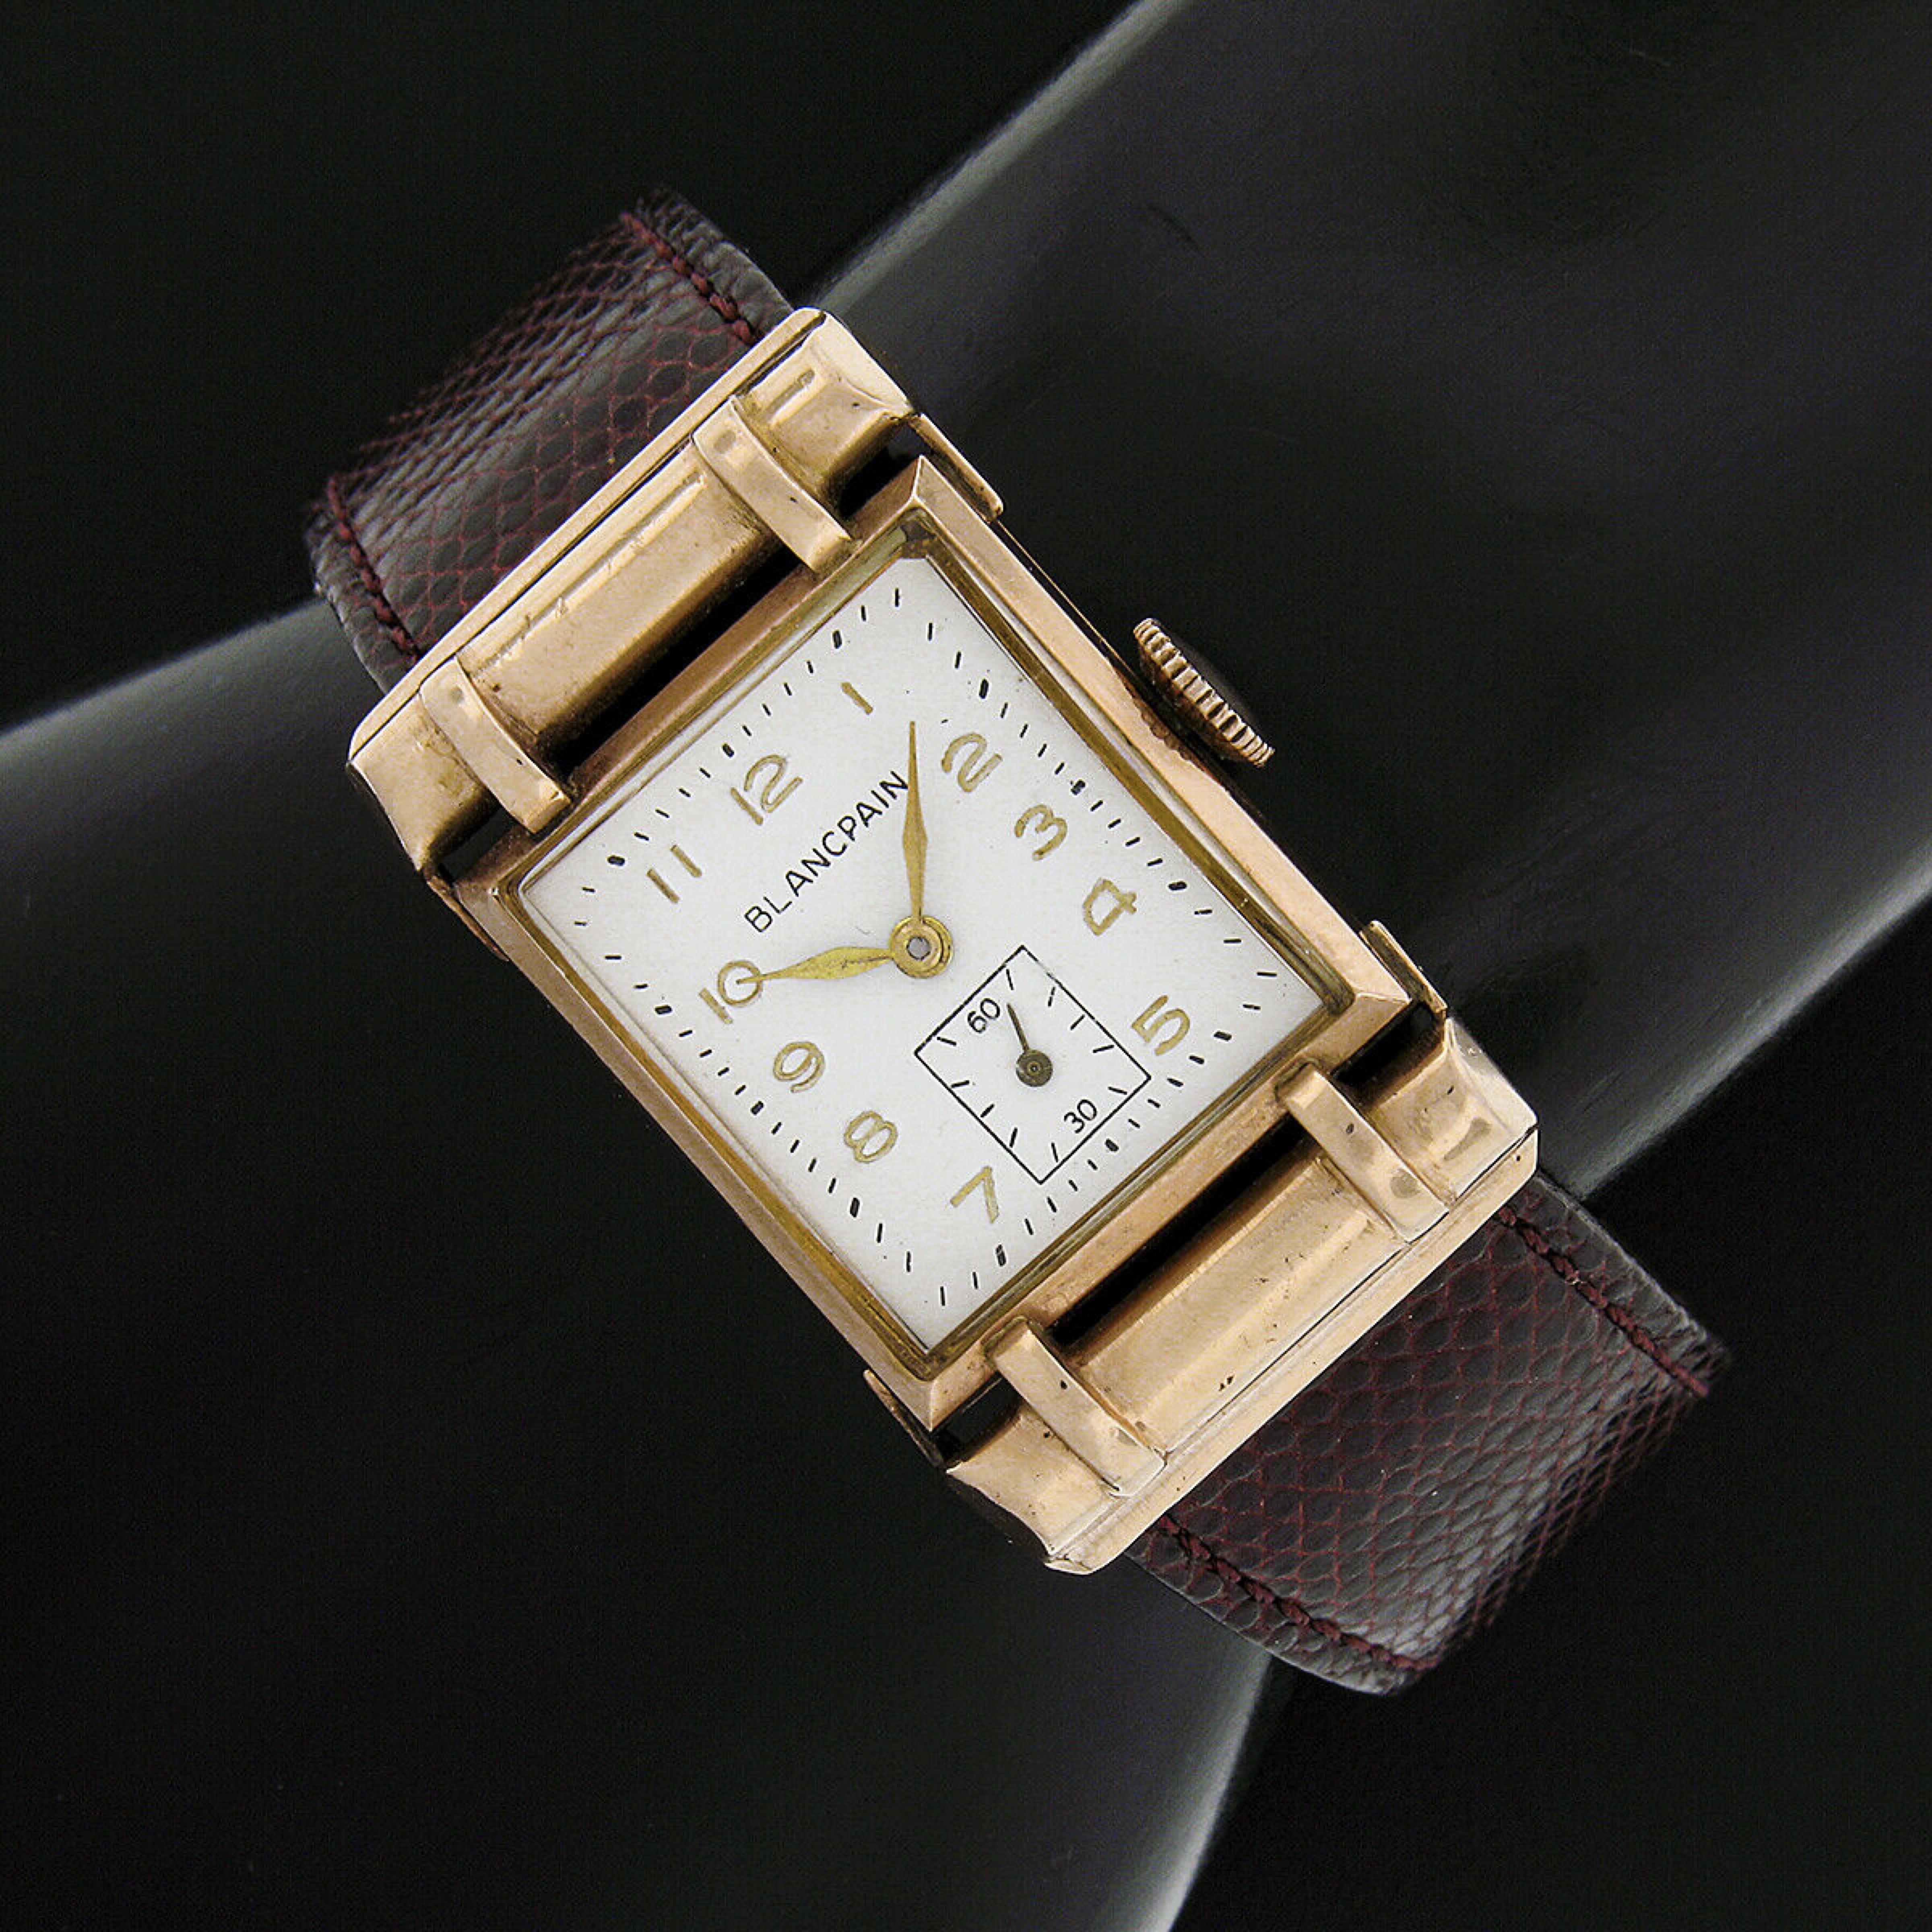 Nous avons ici une montre Blancpain vintage de grande classe, dotée de son mouvement à remontage manuel d'origine qui continue à donner l'heure exacte. Le mouvement est monté dans un boîtier rectangulaire en or rose massif 14k qui a été légèrement